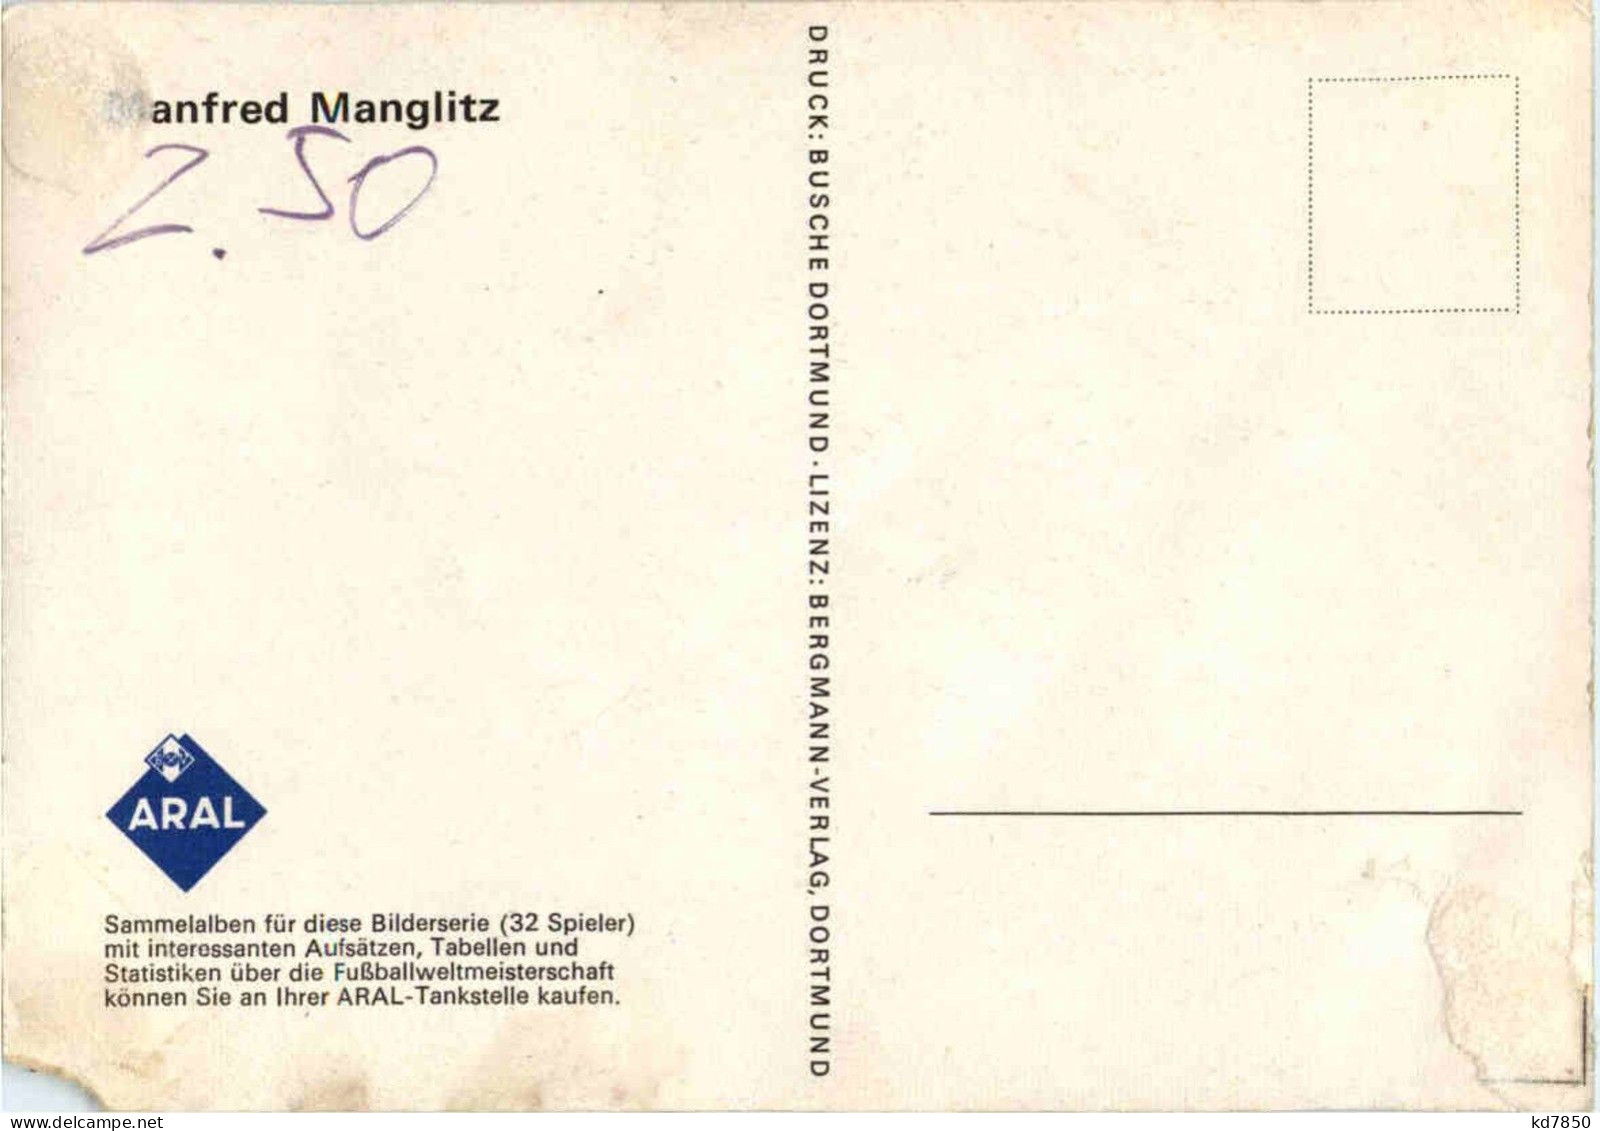 Manfred Manglitz - Fussball